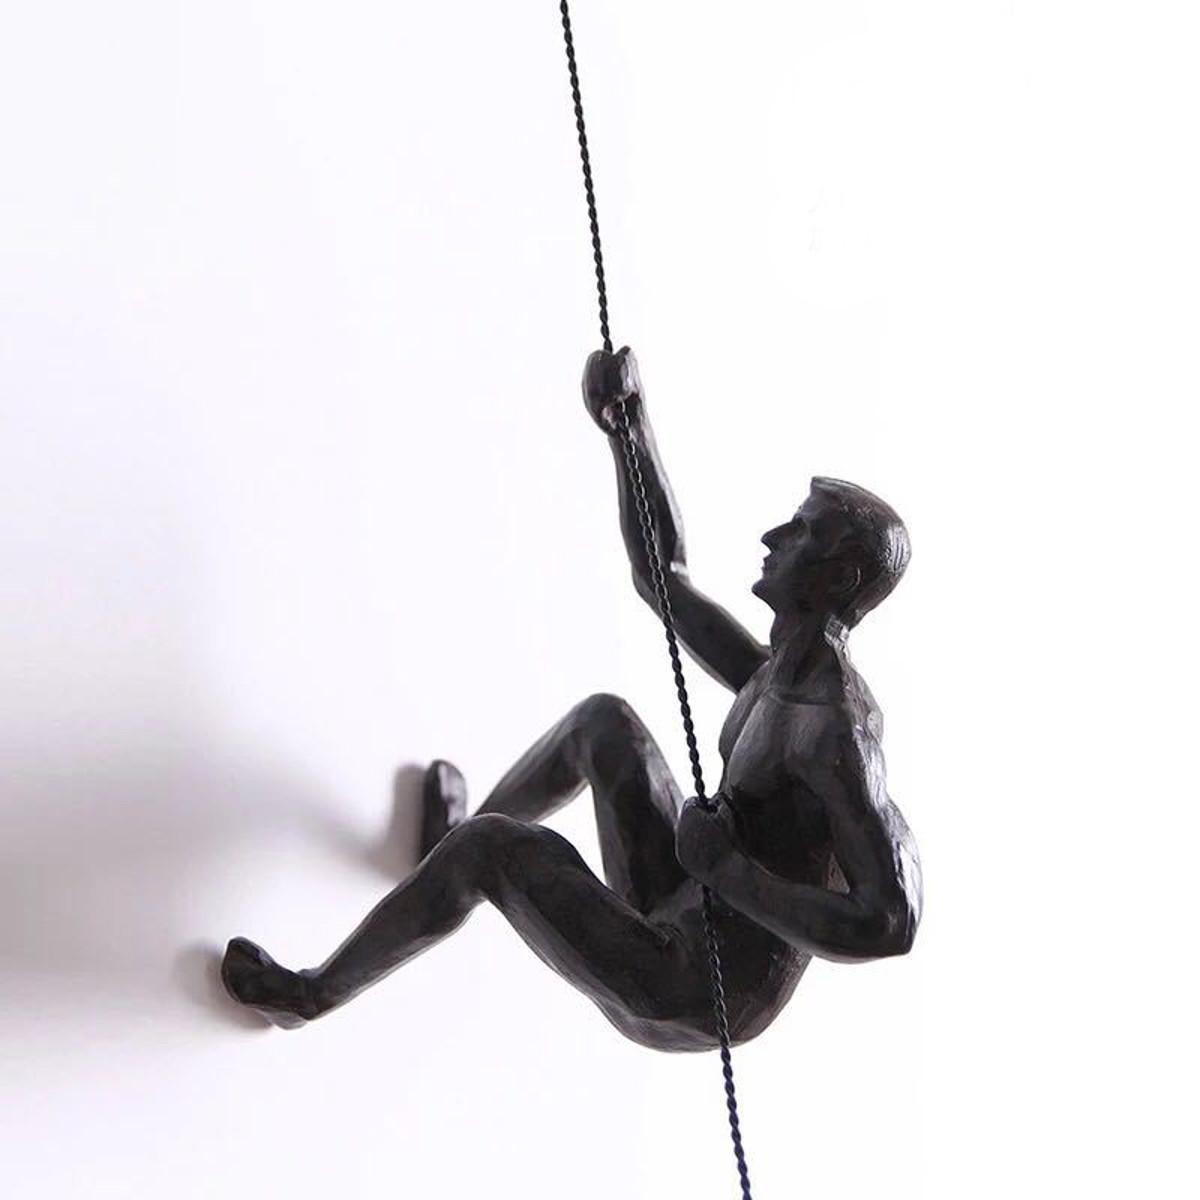 Handmade Global View Iron Man Climbing Rope Wall Mounted Art Sculpture Climber 